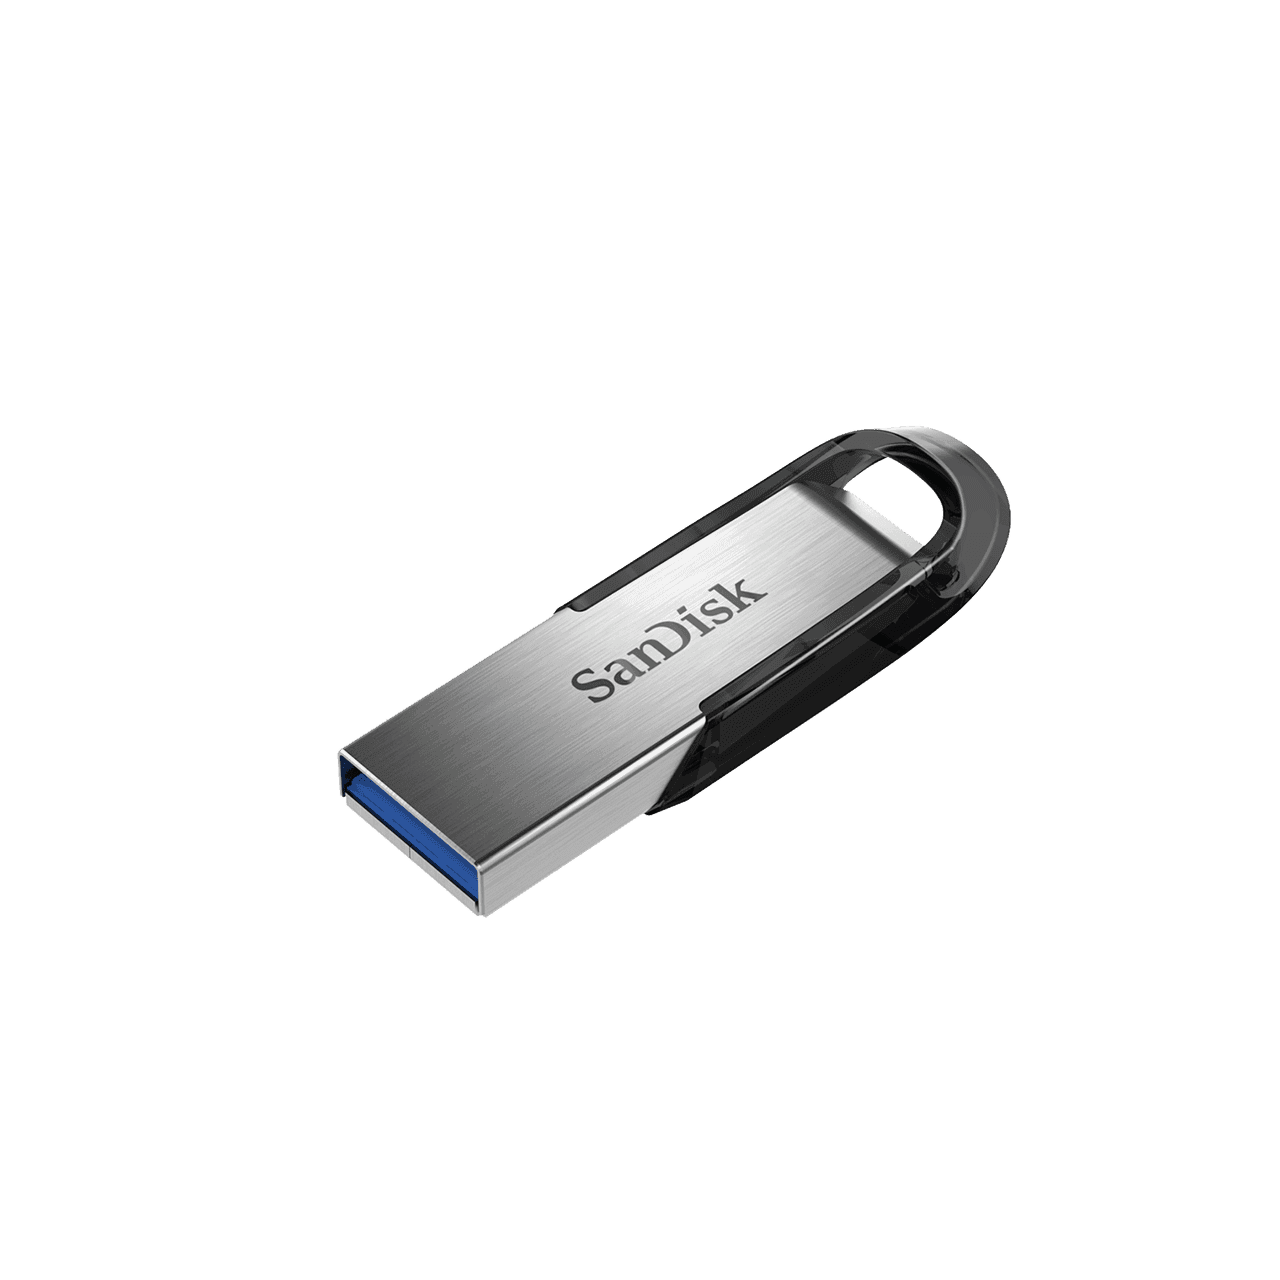 ULTRA FLAIR USB3.0 FLASH DRIVE 128GB